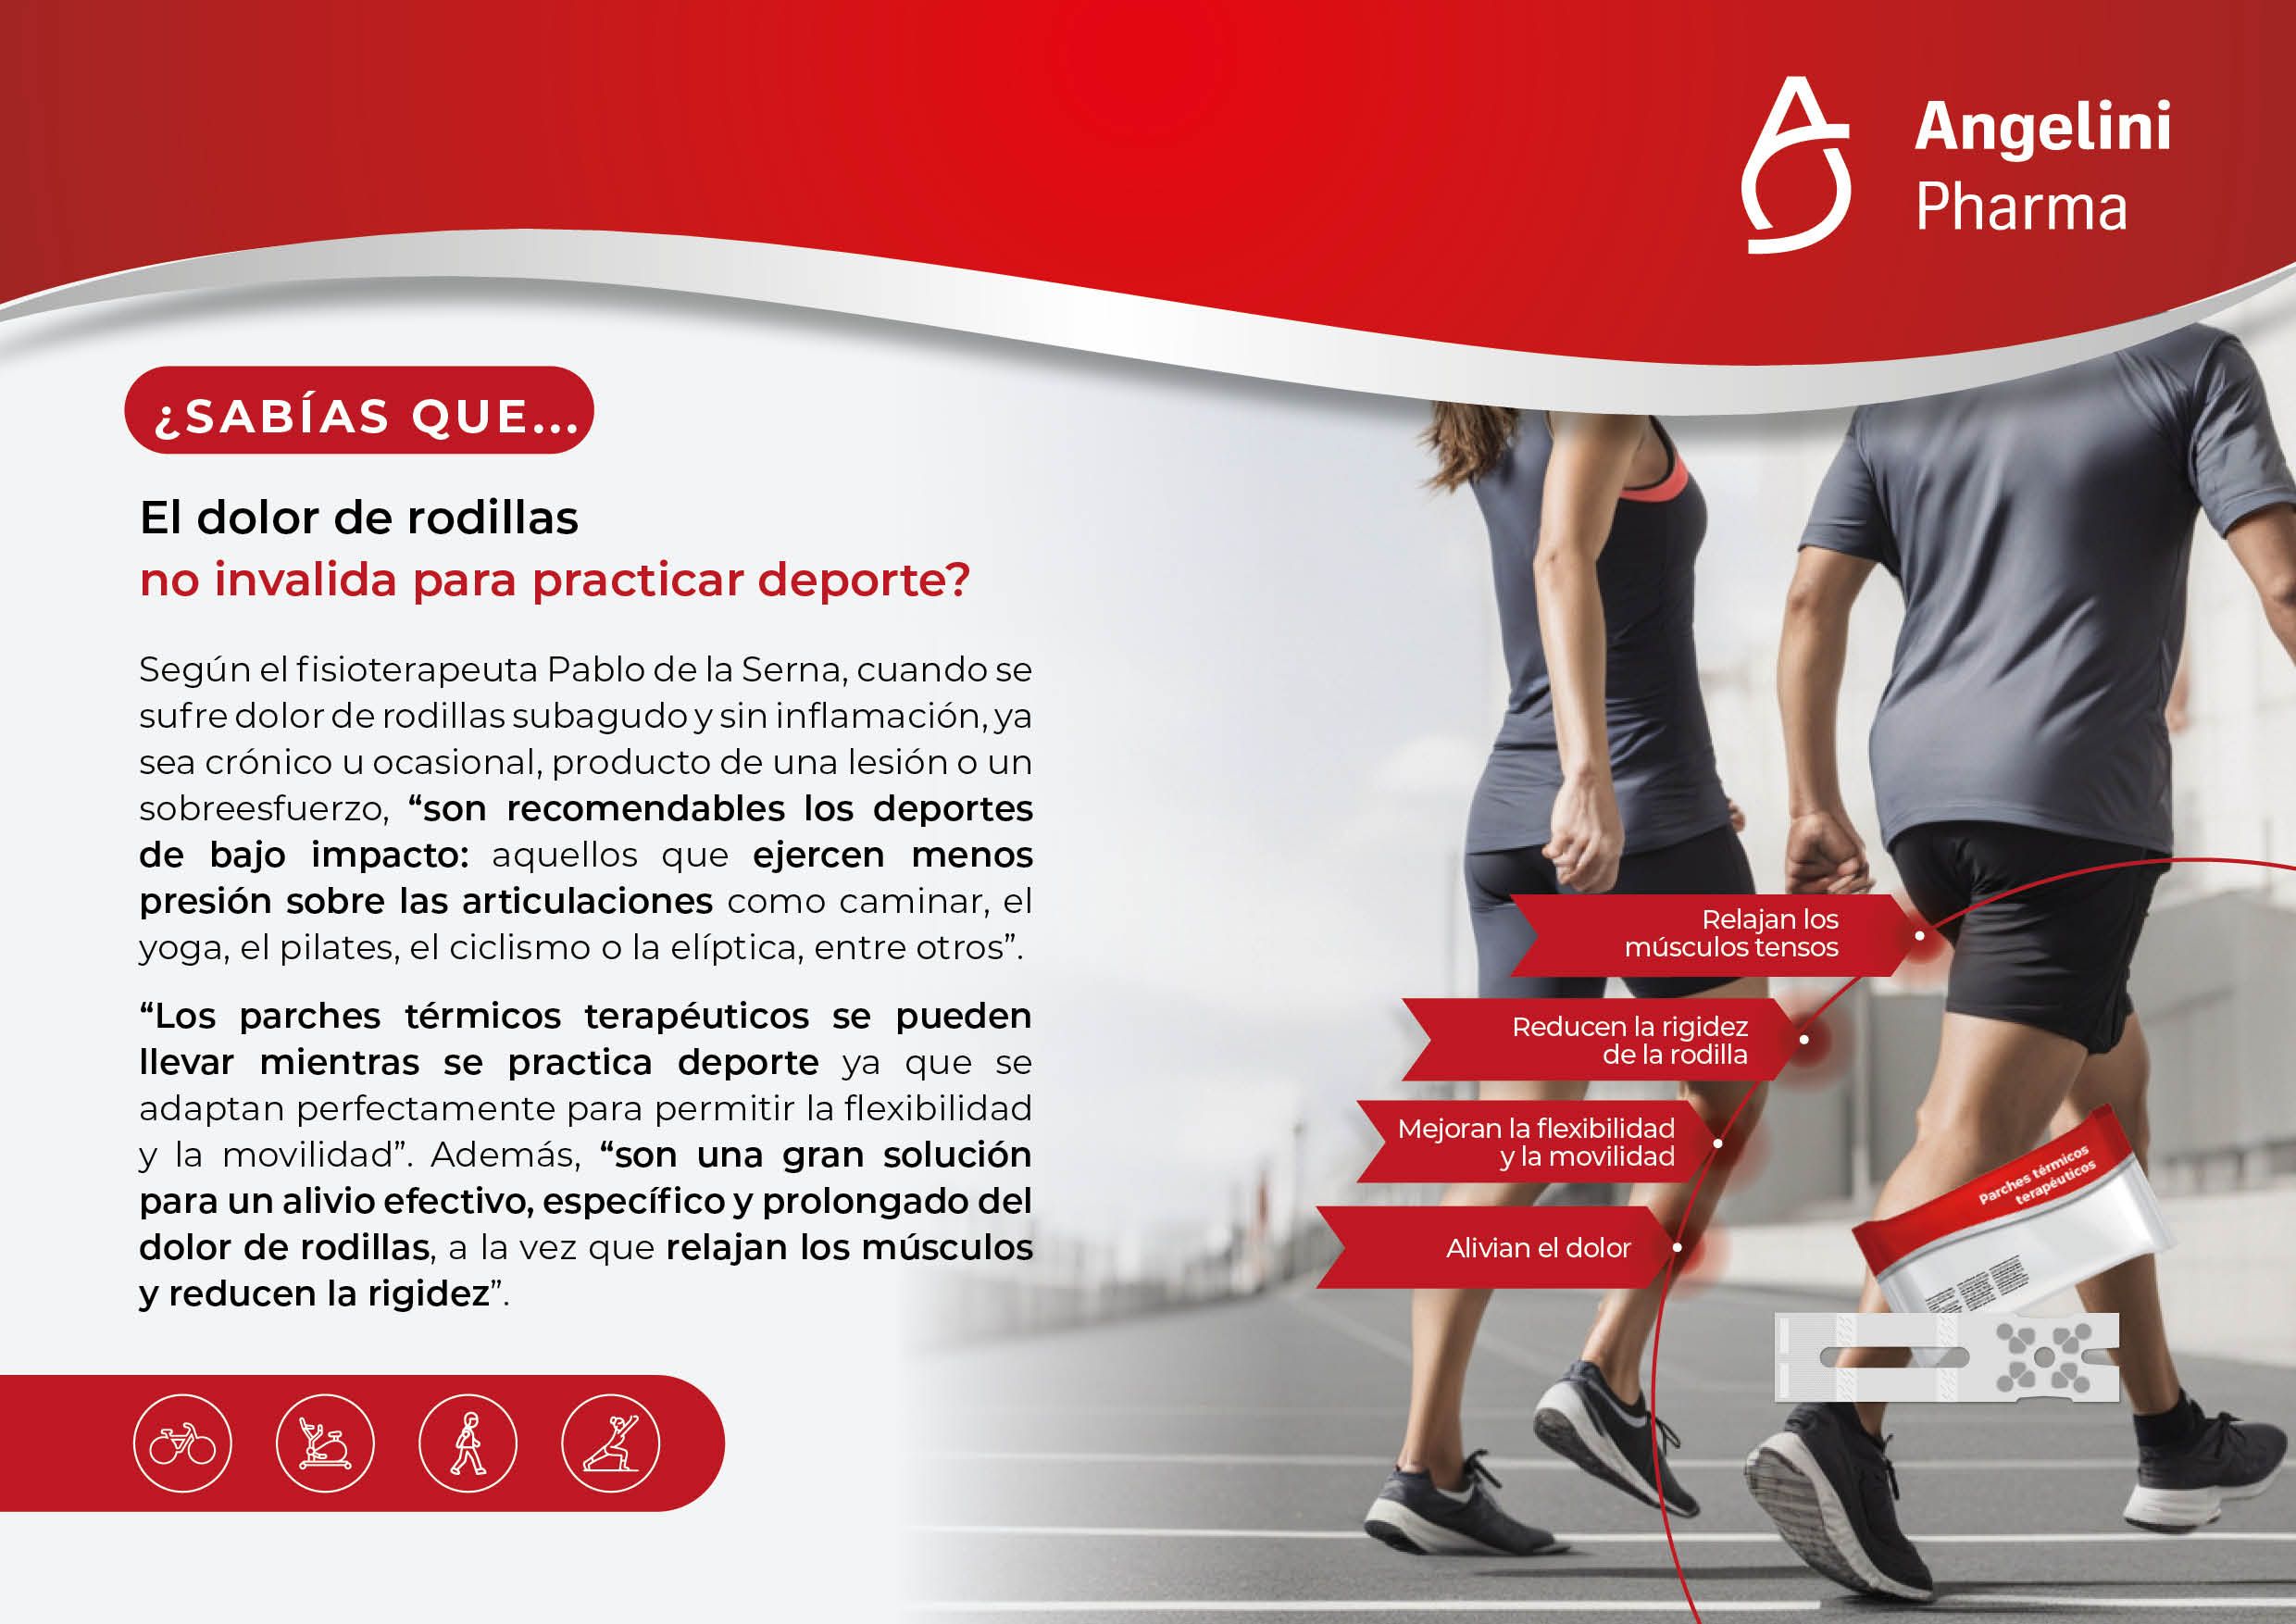 Pablo de la Serna: "El dolor de rodilla no invalida para hacer deporte" 